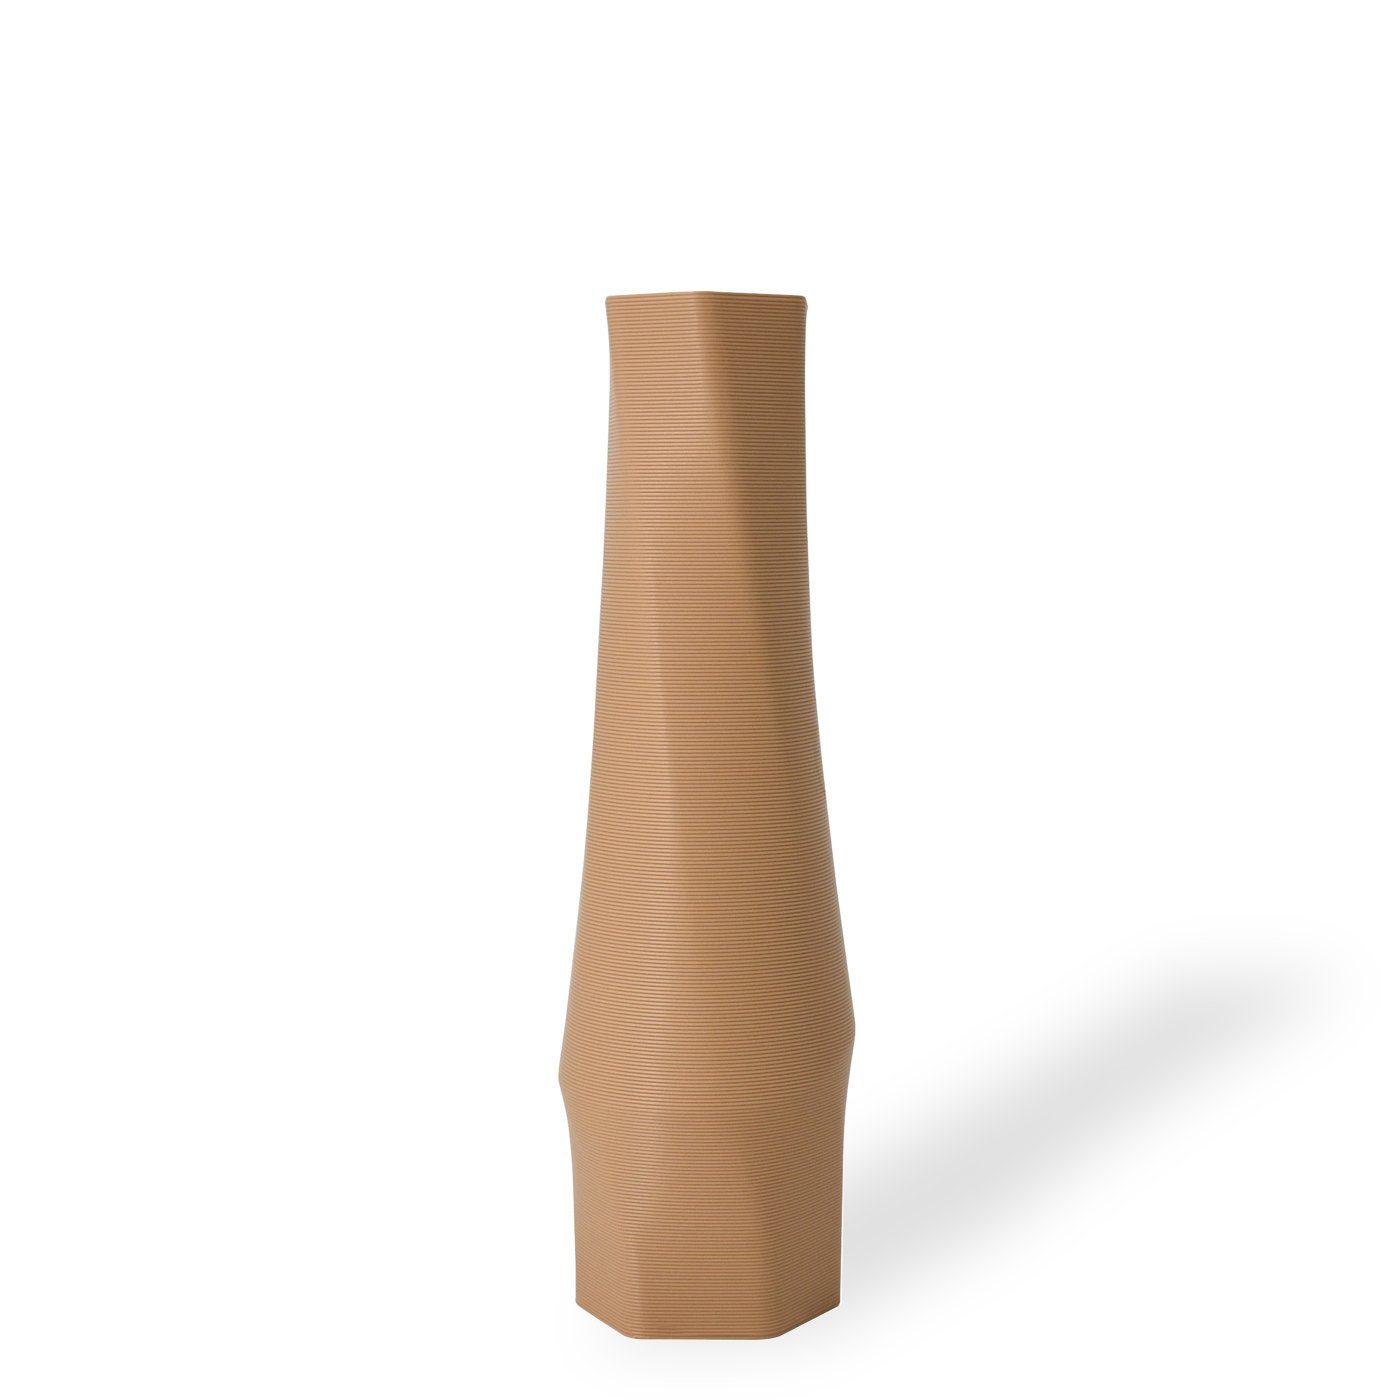 Shapes - Decorations Dekovase the vase - hexagon (basic), 3D Vasen, viele Farben, 100% 3D-Druck (Einzelmodell, 1 Vase), Wasserdicht; Leichte Struktur innerhalb des Materials (Rillung) Erdnussbraun